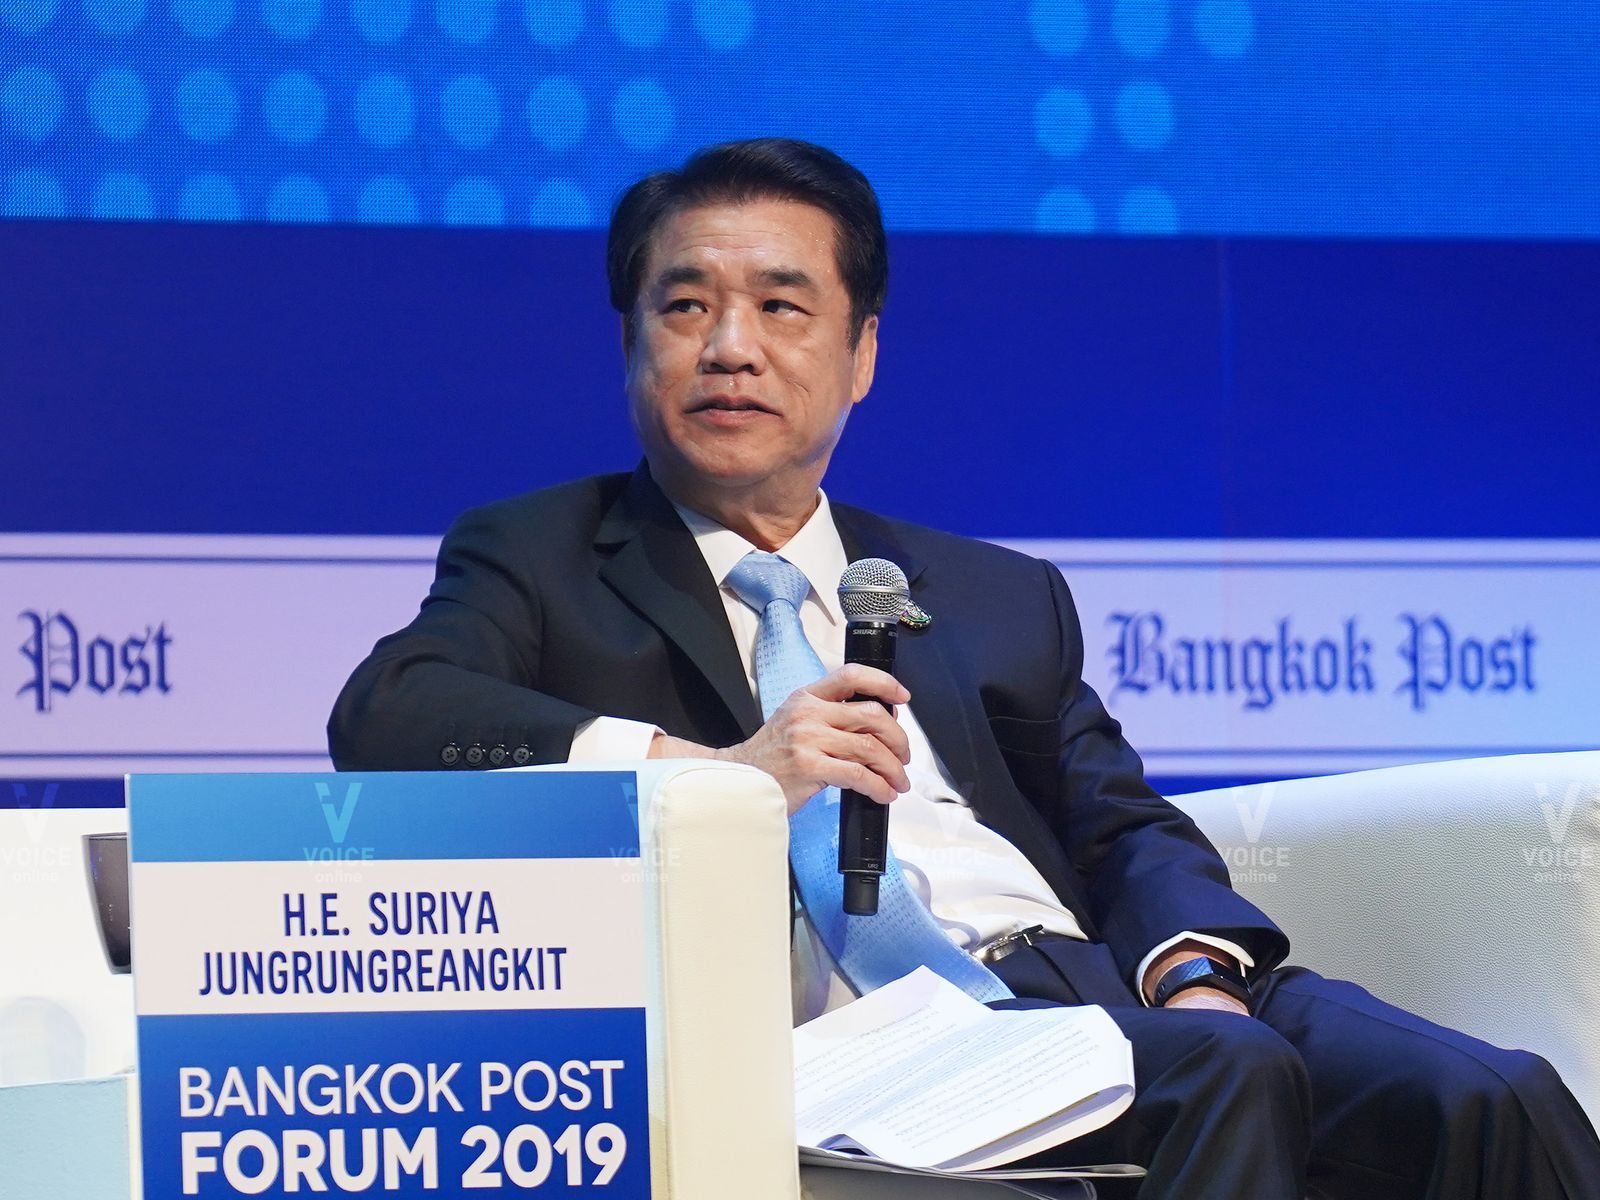 สุริยะ จึงรุ่งเรืองกิจ-งาน Bangkok Post Forum 2019